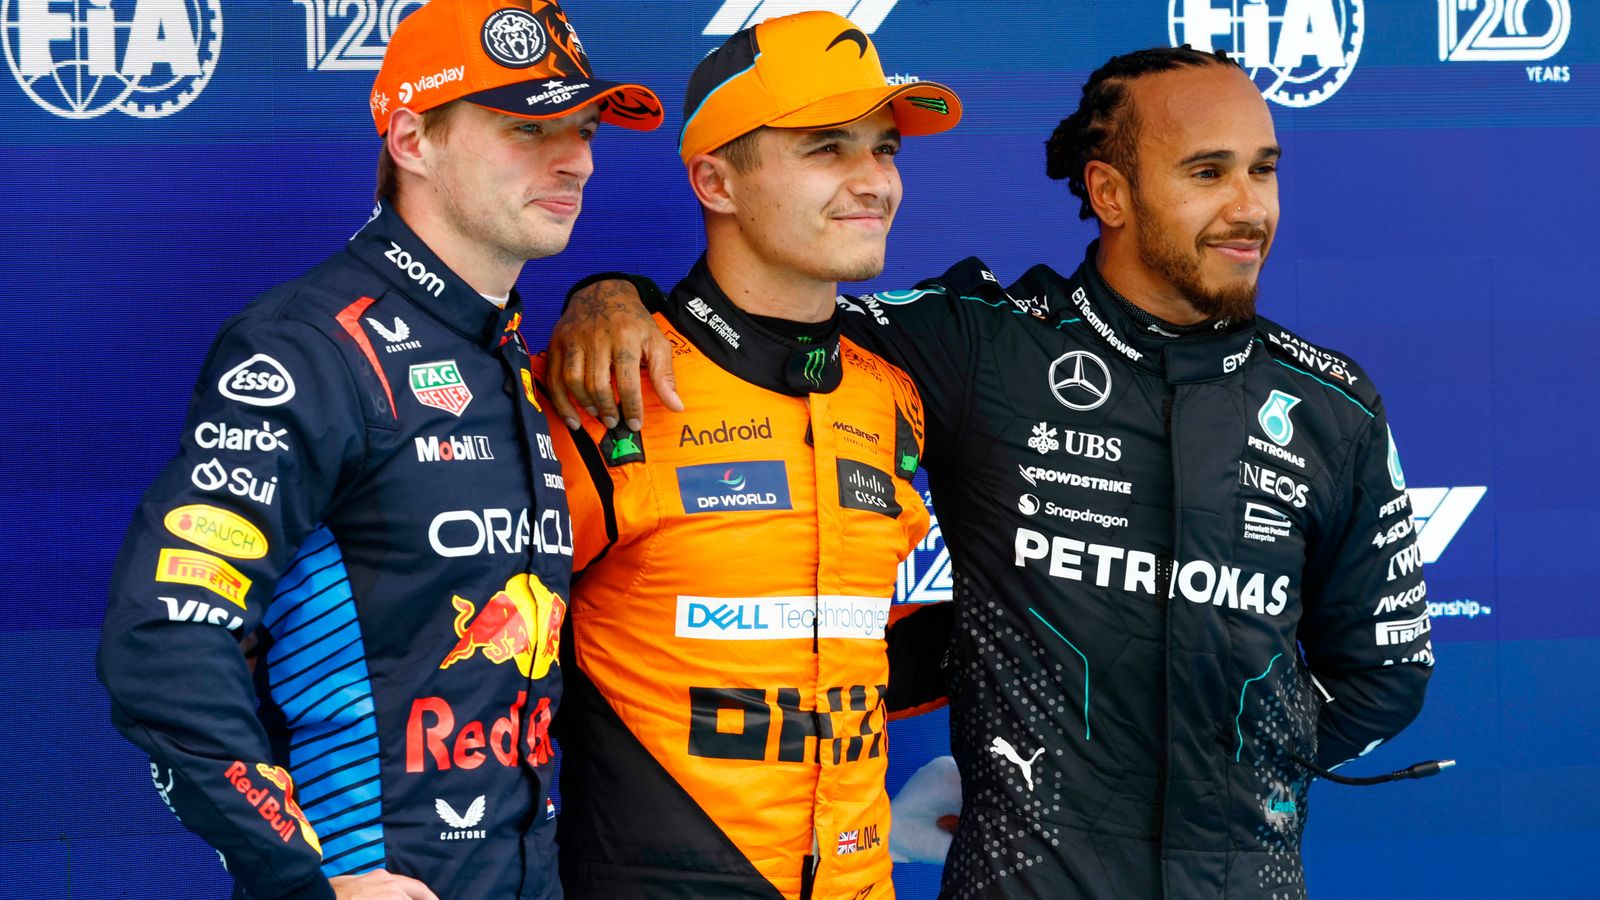 Clasificación del Gran Premio de España: Lando Norris logra la pole en el último suspiro para vencer a Max Verstappen y Lewis Hamilton |  noticias de formula 1